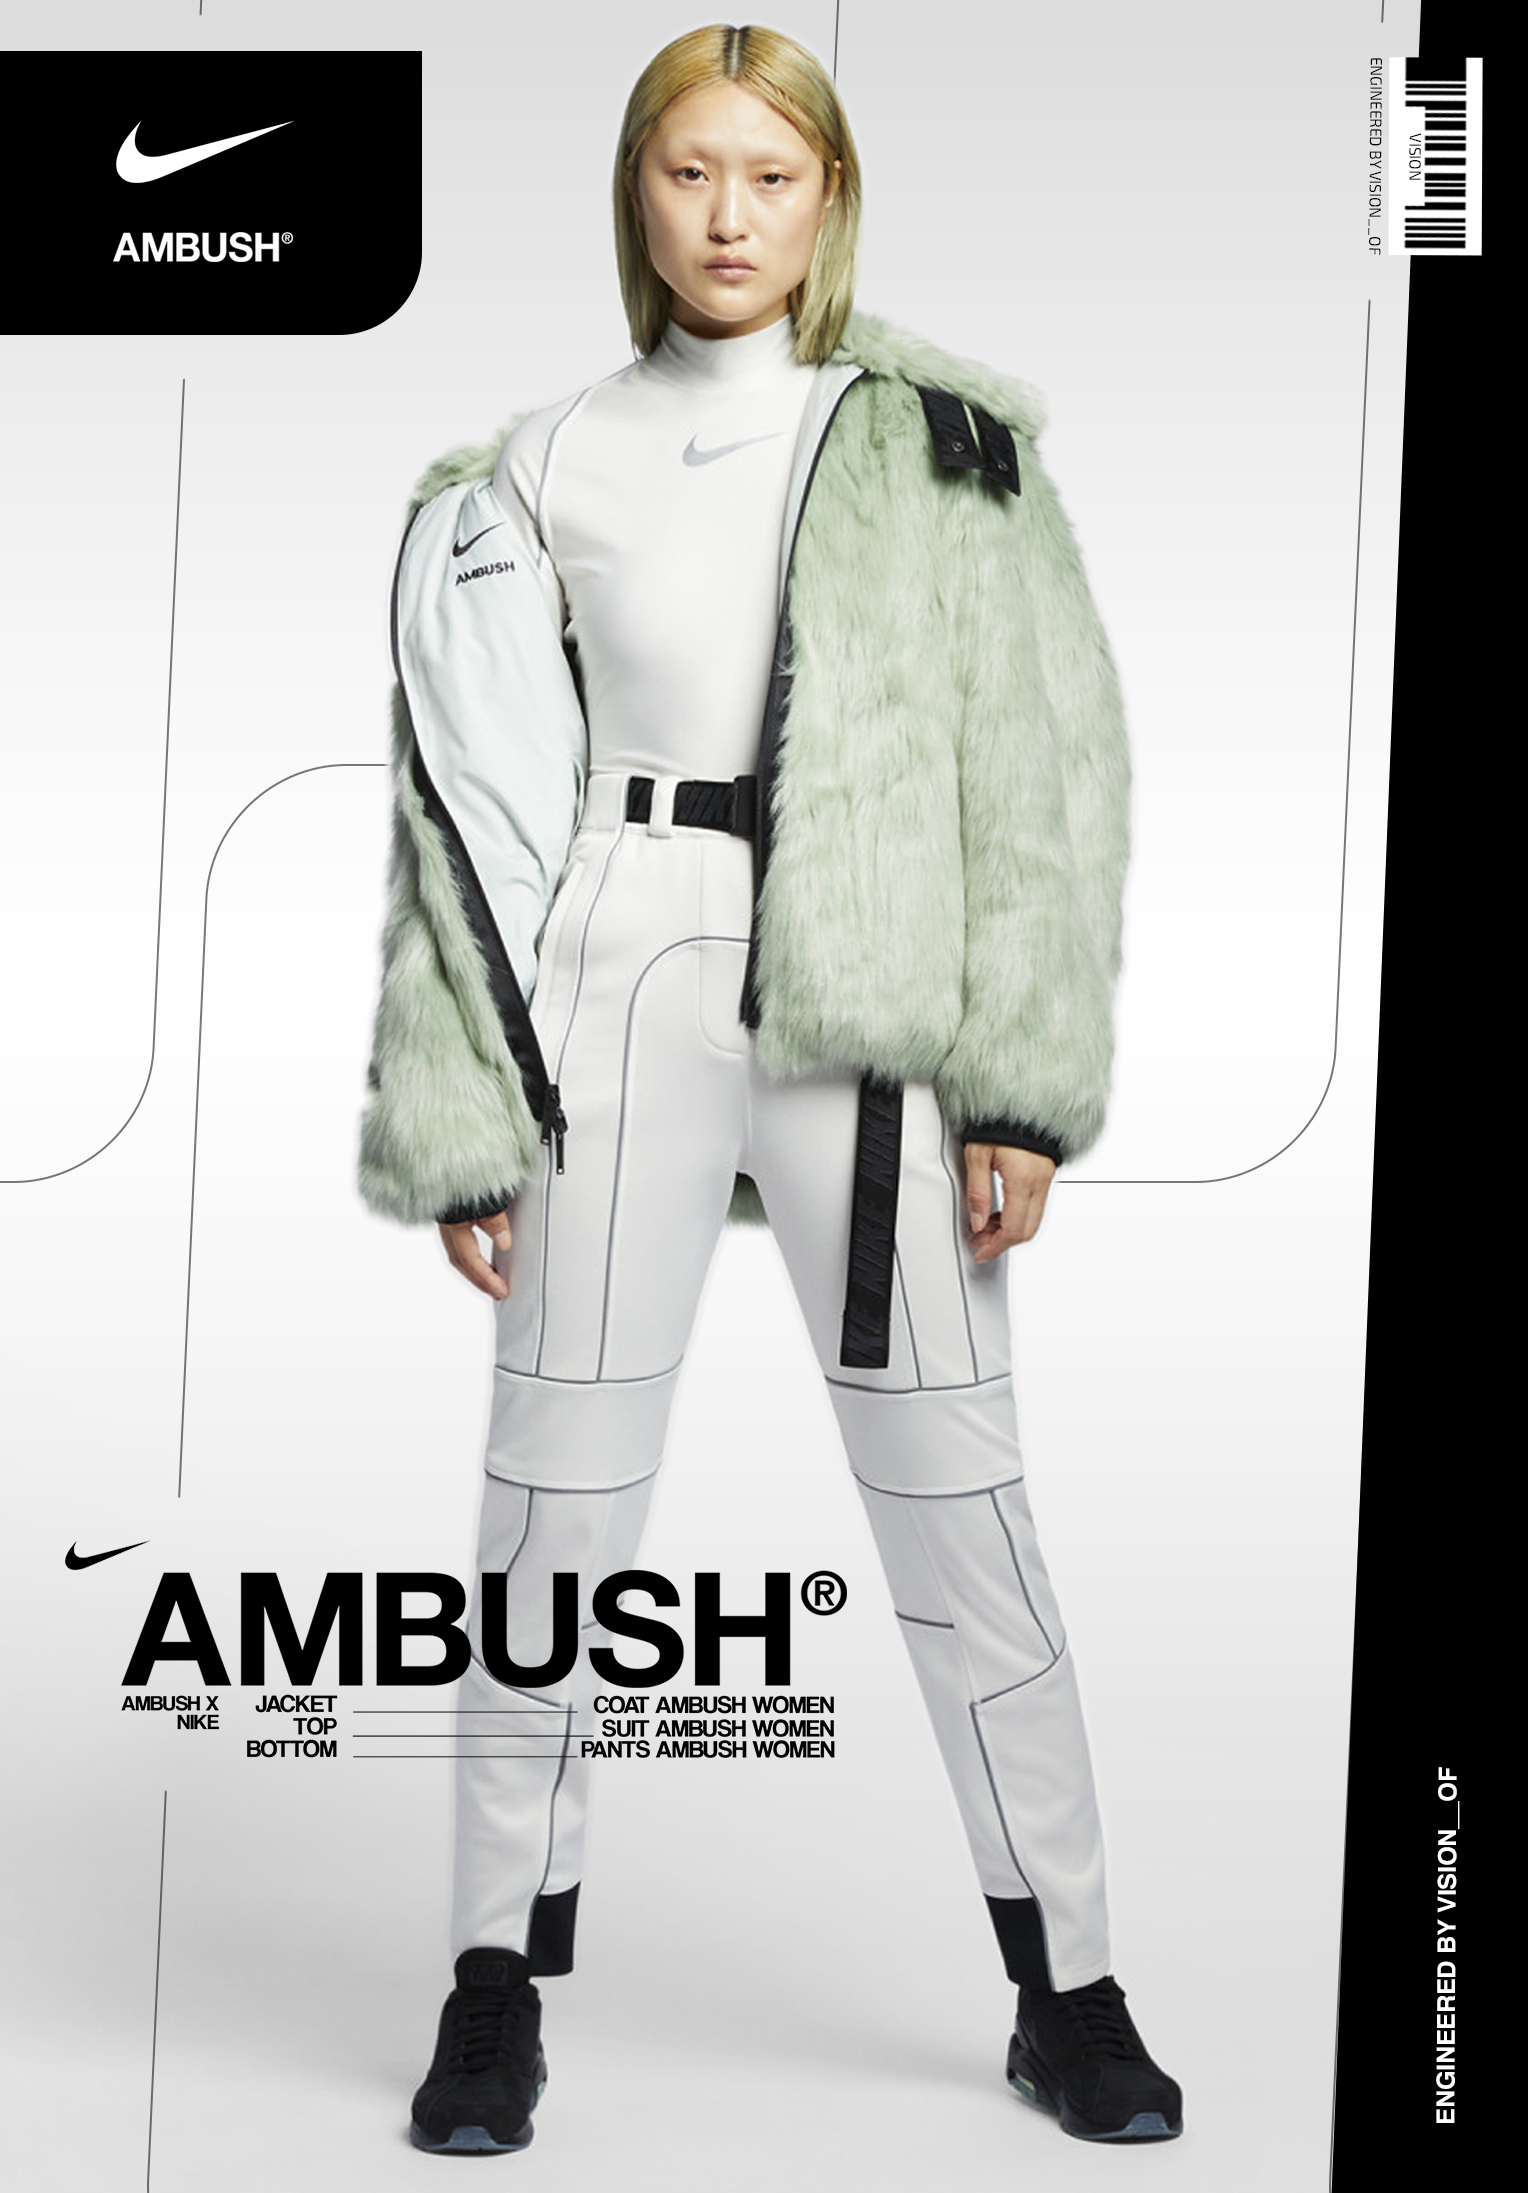 ambush-poster